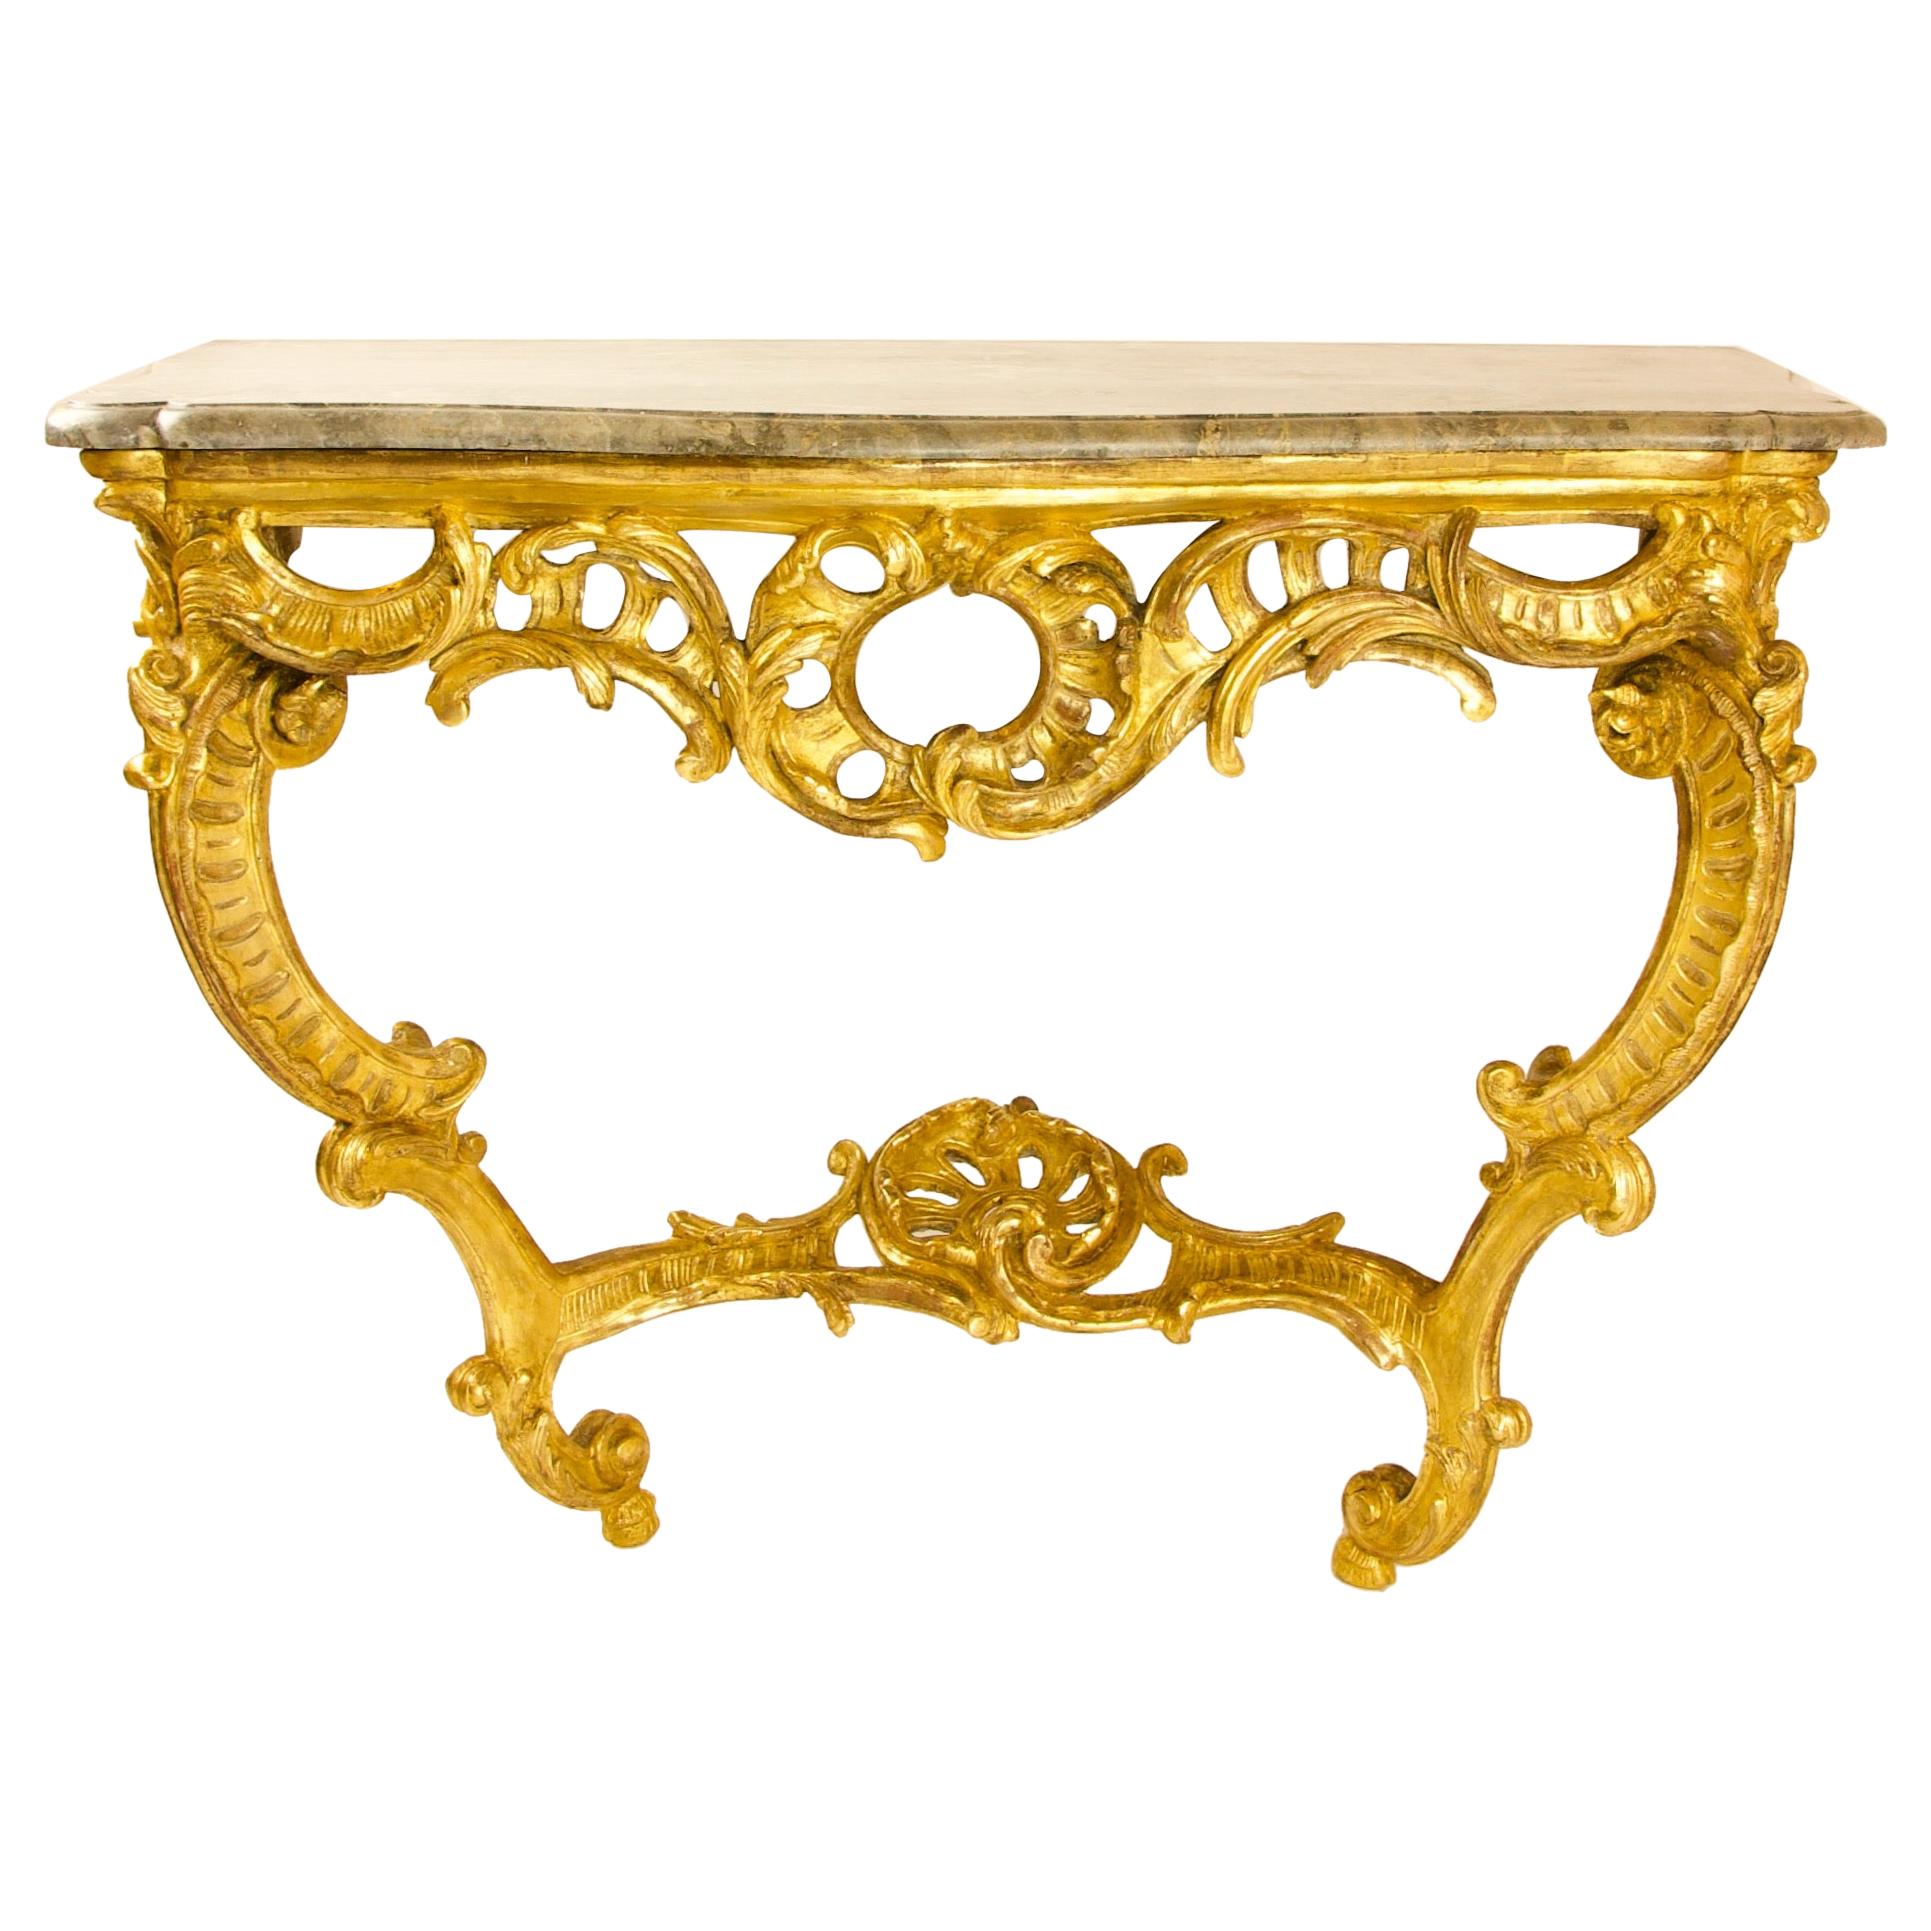 Grande table console française Louis XV du 18ème siècle en bois doré sculpté et sculpté